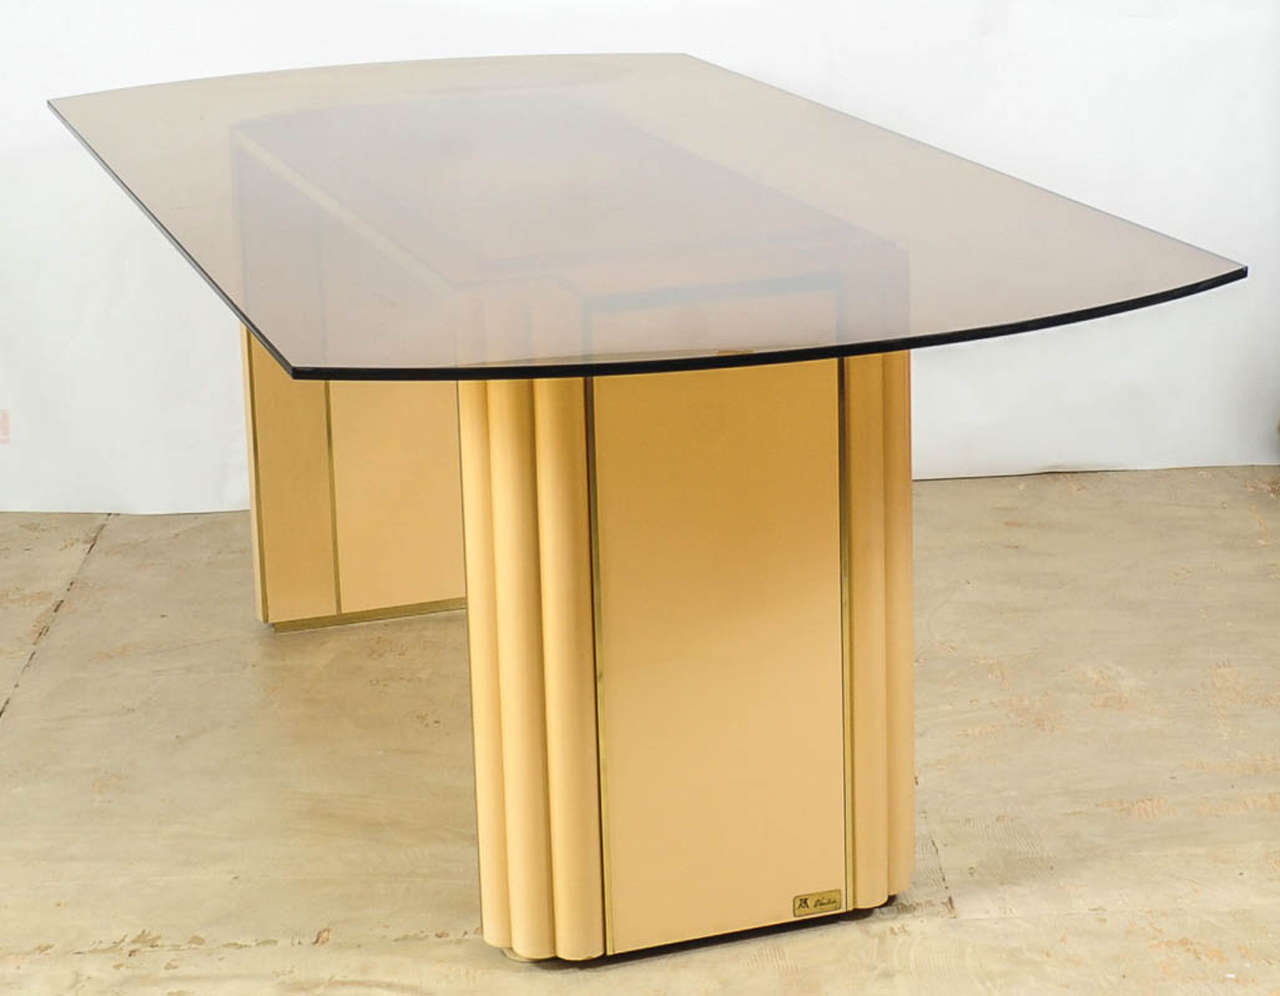 Très élégante table de salle à manger en bois laqué ivoire et laiton poli conçue par Alain Delon pour la Maison Jansen. Le plateau de la table est en verre fumé de forme semi-ovale.
L'acteur français Alain Delon (né en 1935) s'est tourné vers le